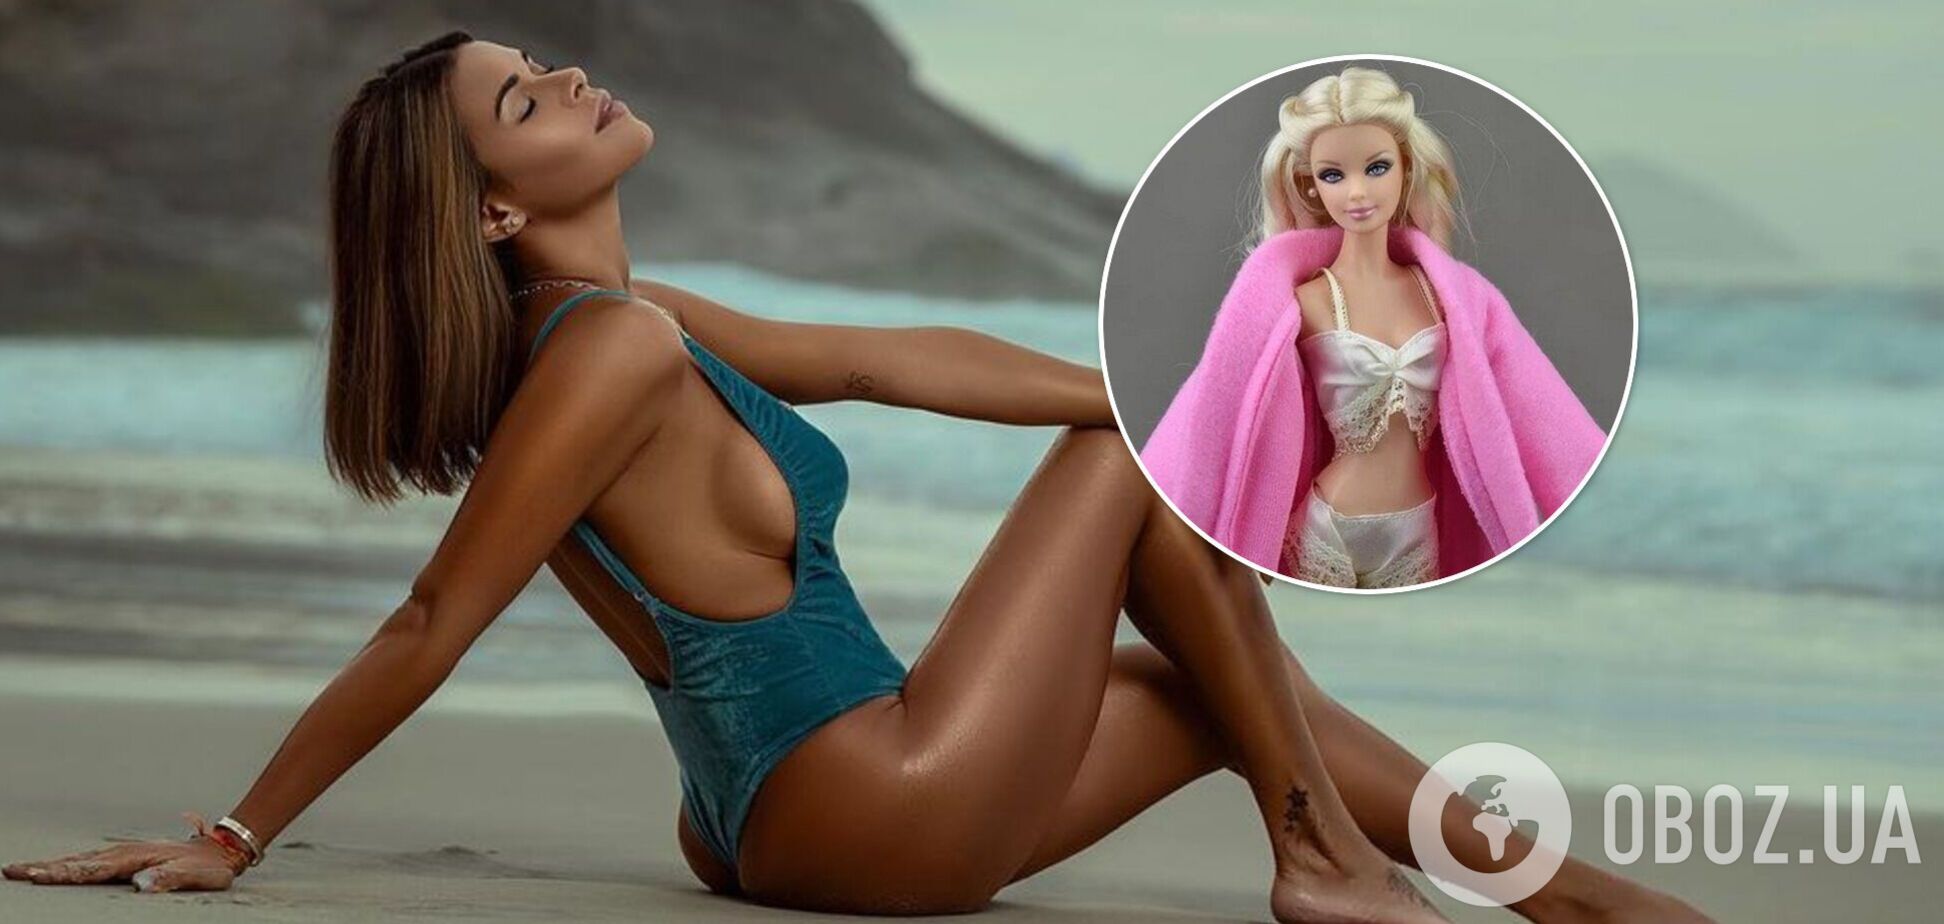 Модель Playboy, яка пропагує мастурбацію, зробила собі 'талію ляльки Барбі'. Фото